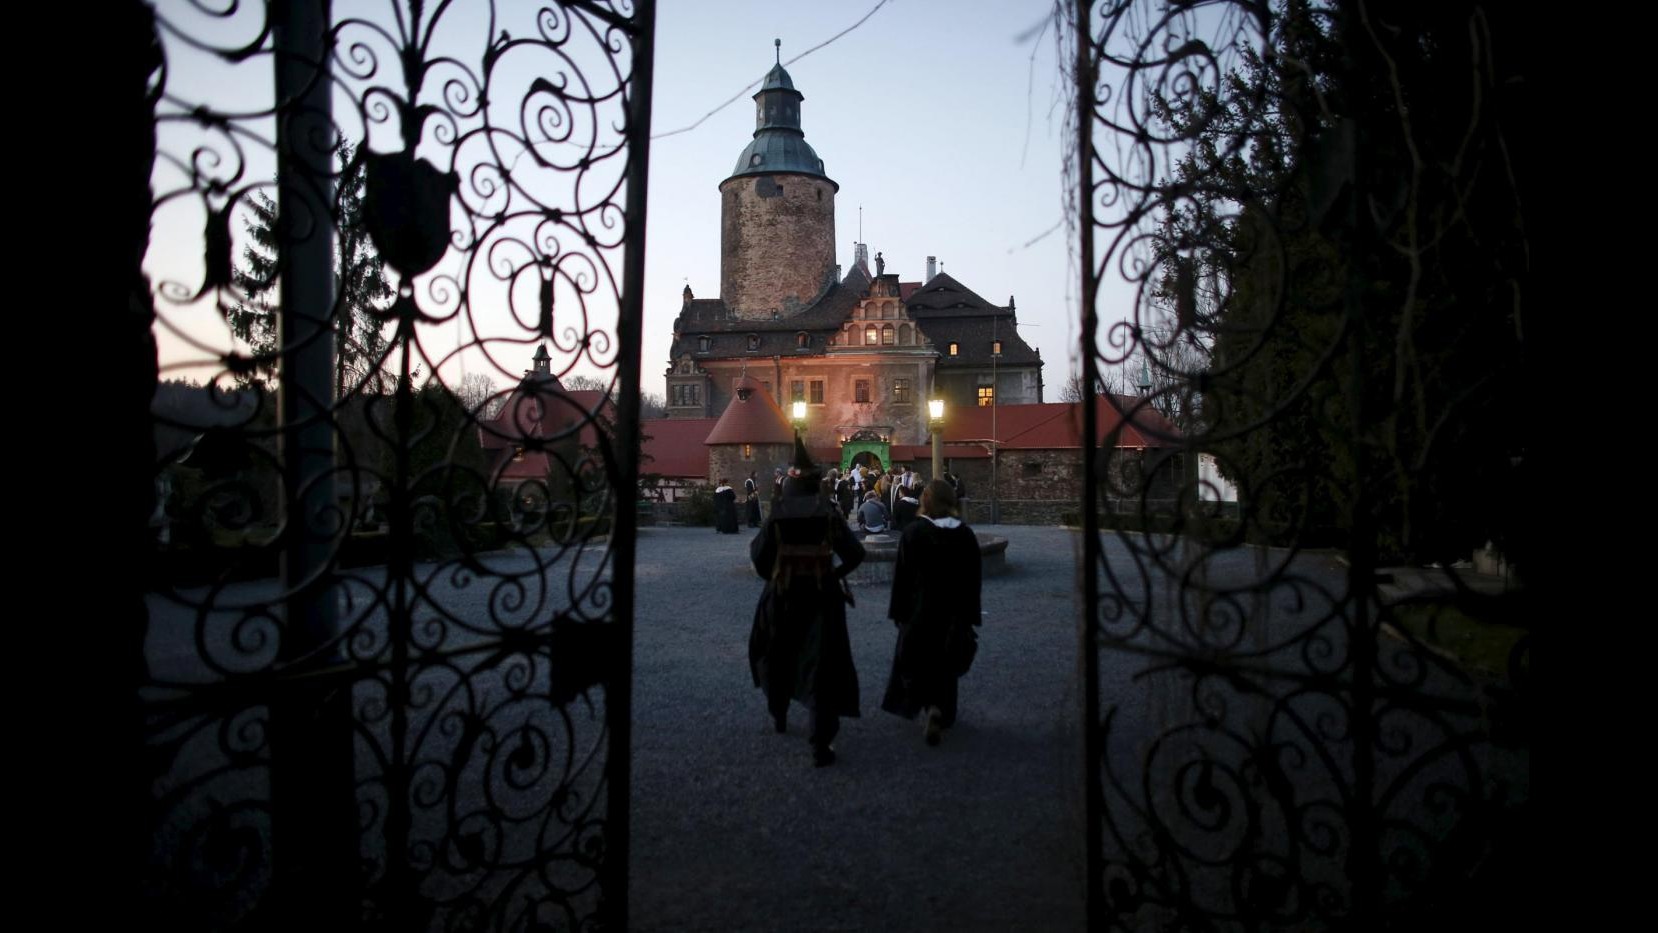 Polonia, al castello di Czocha la scuola di magia di Harry Potter